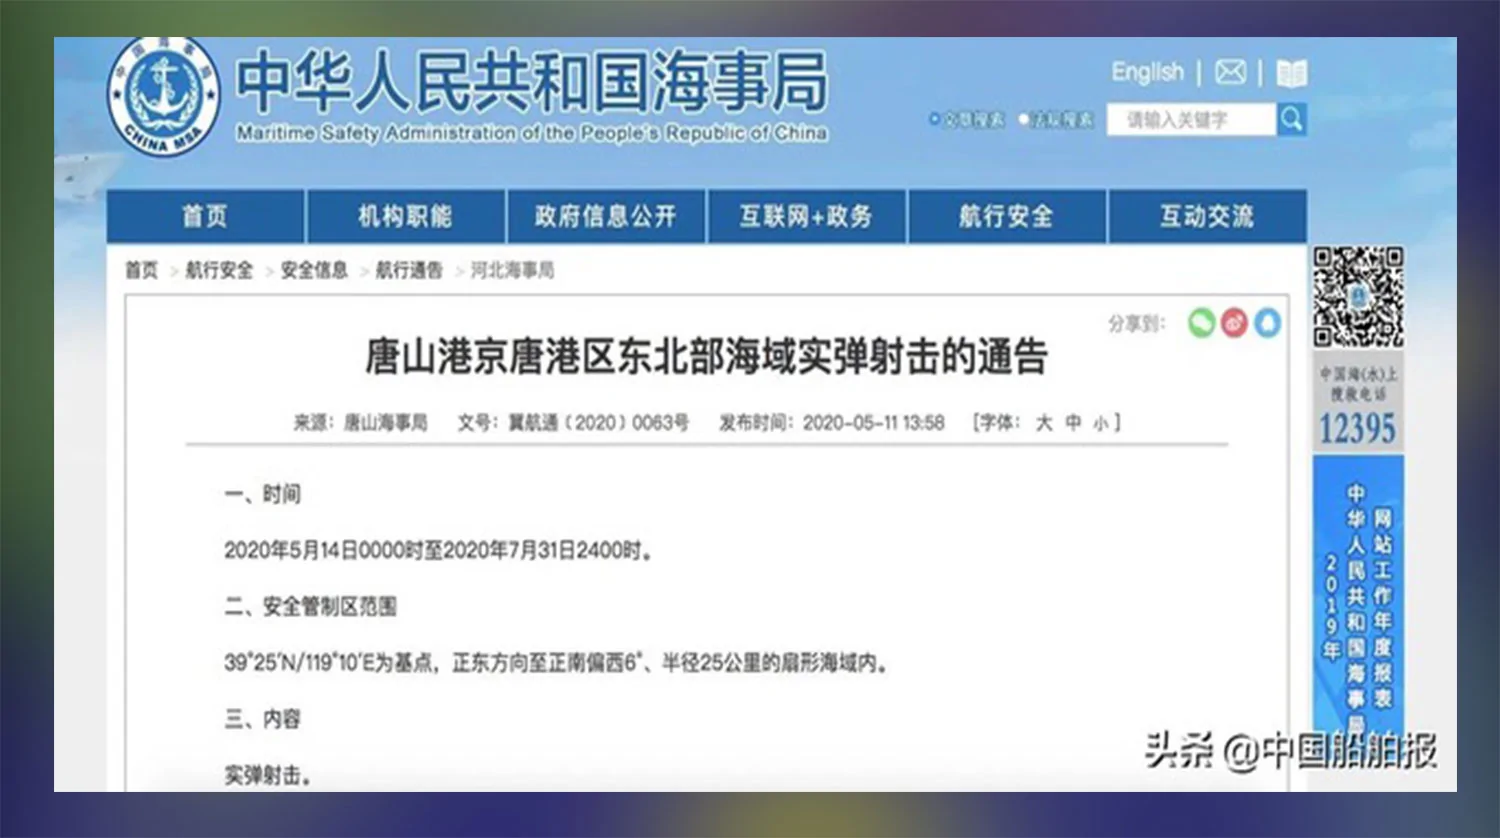 中国海事局发布实弹射击通告。(截图自今日头条)